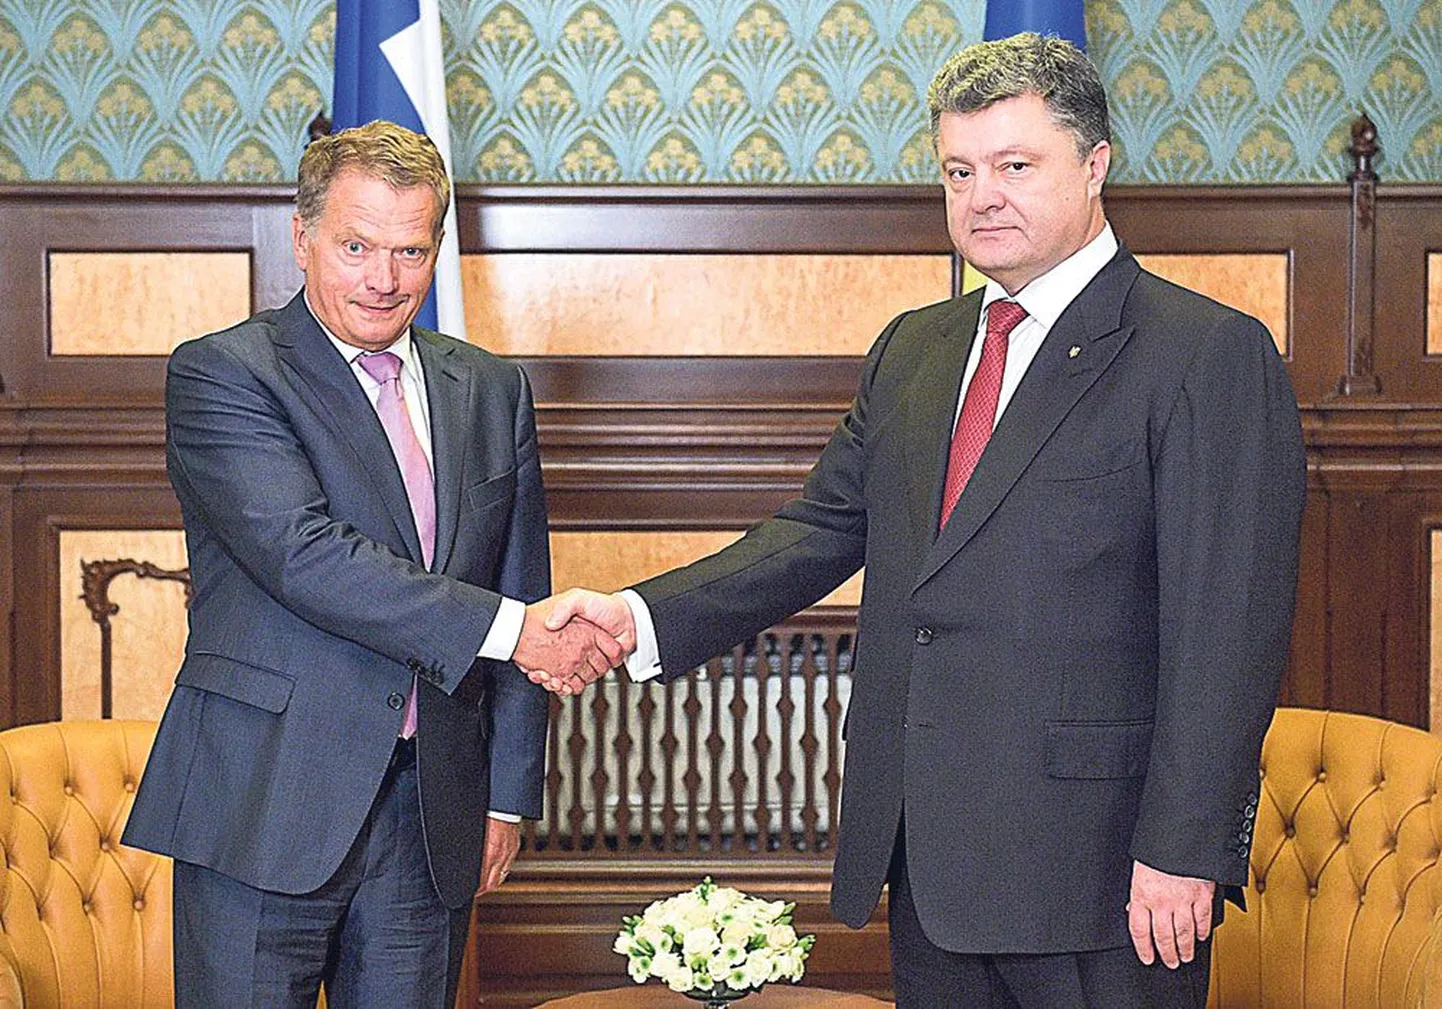 Soome president Sauli Niinistö (vasakul) ja Ukraina presidendi Petro Porošenko surusid kahe nädala eest Kiievis tseremoniaalselt kätt.